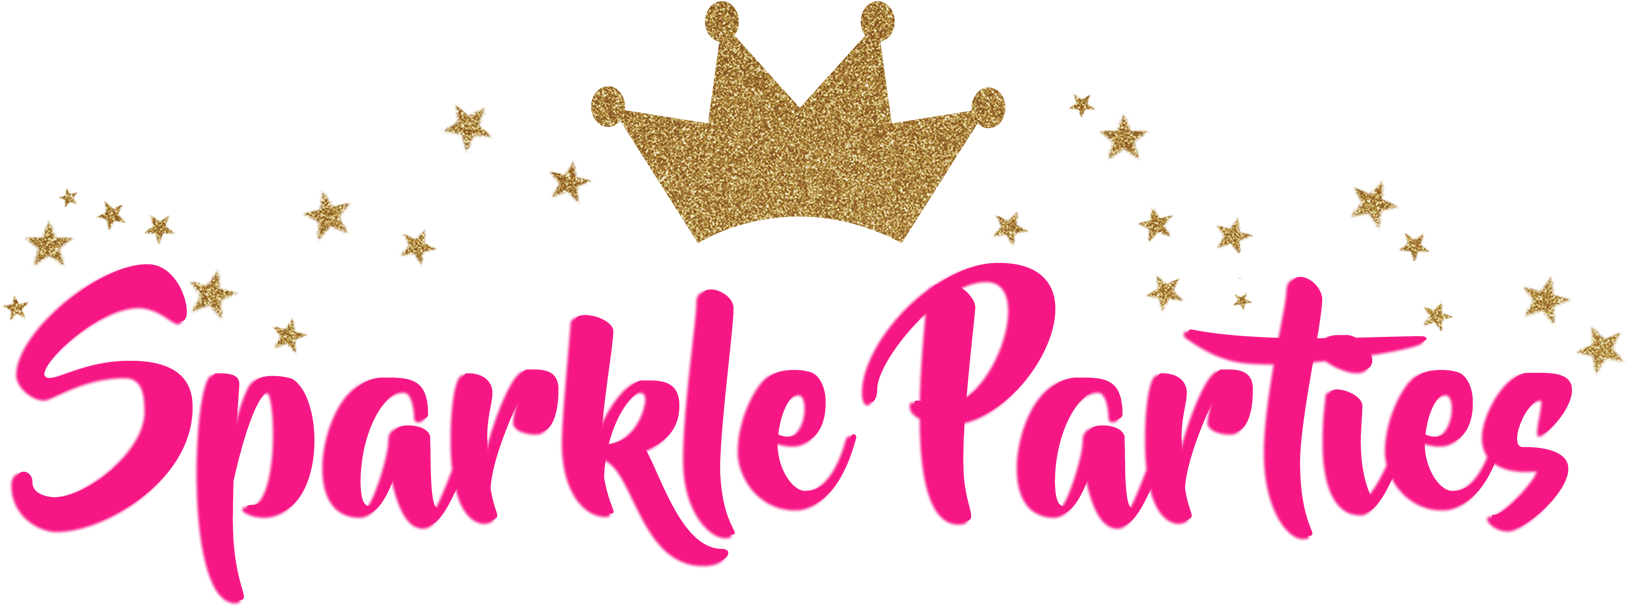 Sparkle Parties Logo Design PNG